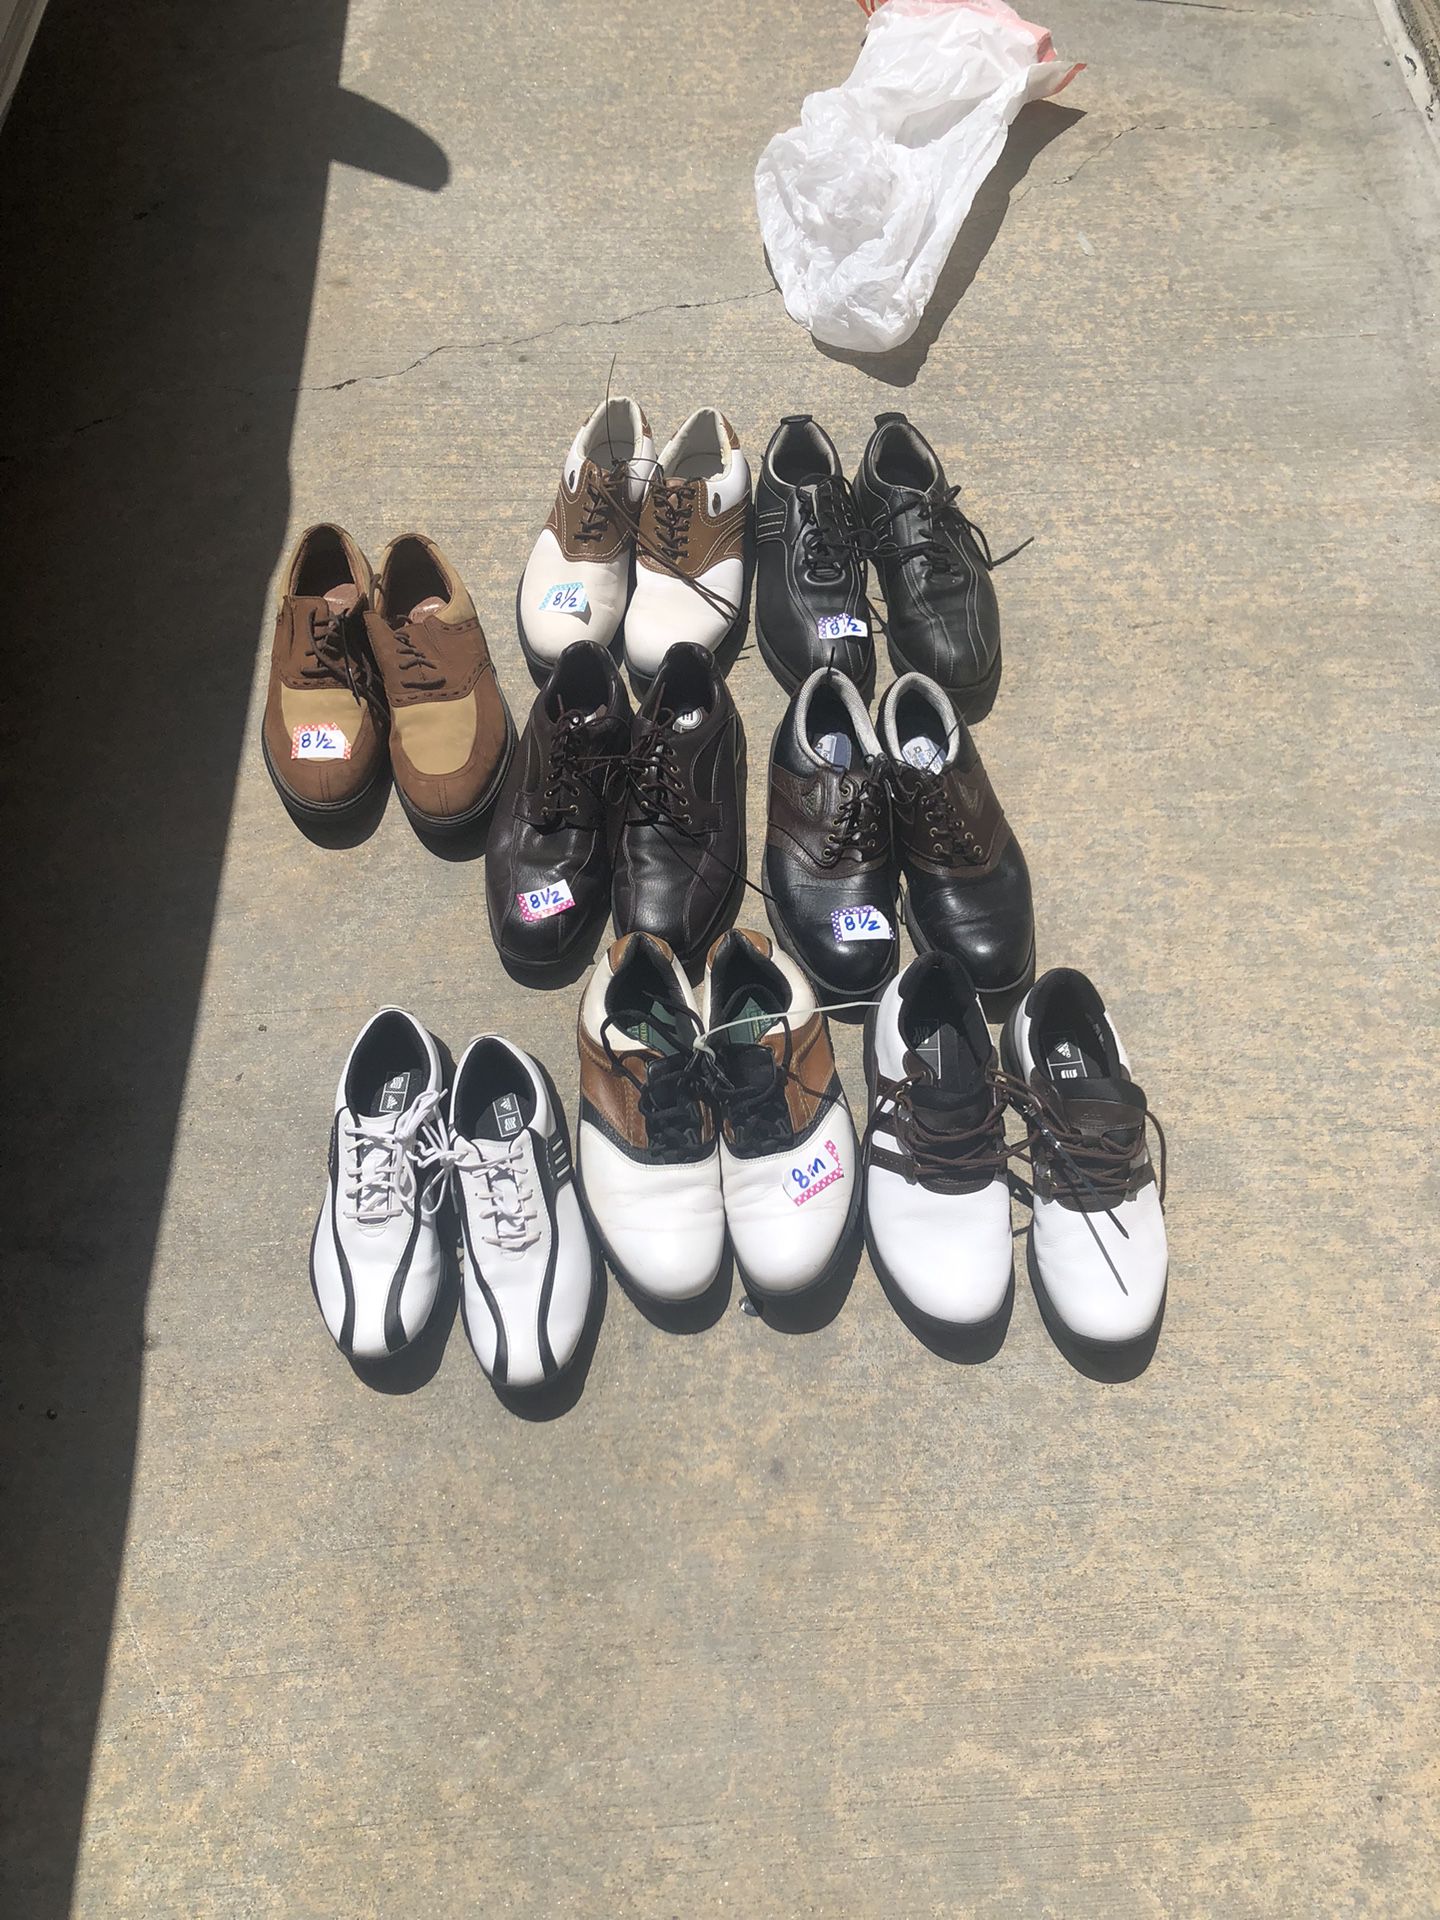 Lot Bundle Men’s golf shoes size 8.5 most from estate sale